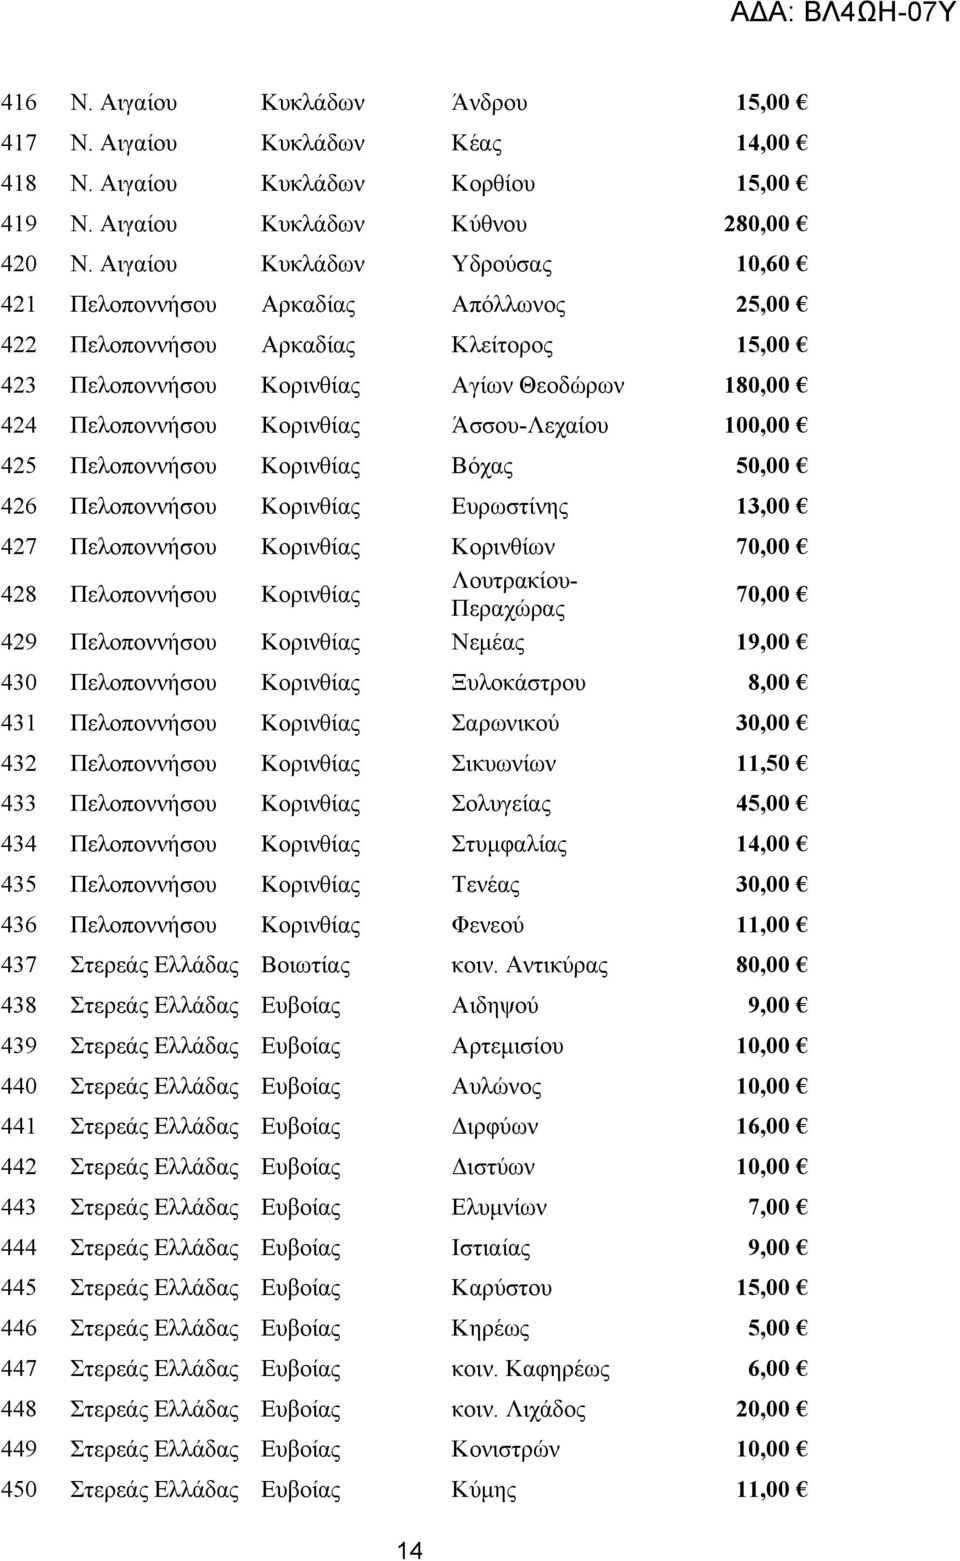 Άσσου-Λεχαίου 100,00 425 Πελοποννήσου Κορινθίας Βόχας 50,00 426 Πελοποννήσου Κορινθίας Ευρωστίνης 13,00 427 Πελοποννήσου Κορινθίας Κορινθίων 70,00 428 Πελοποννήσου Κορινθίας Λουτρακίου- Περαχώρας